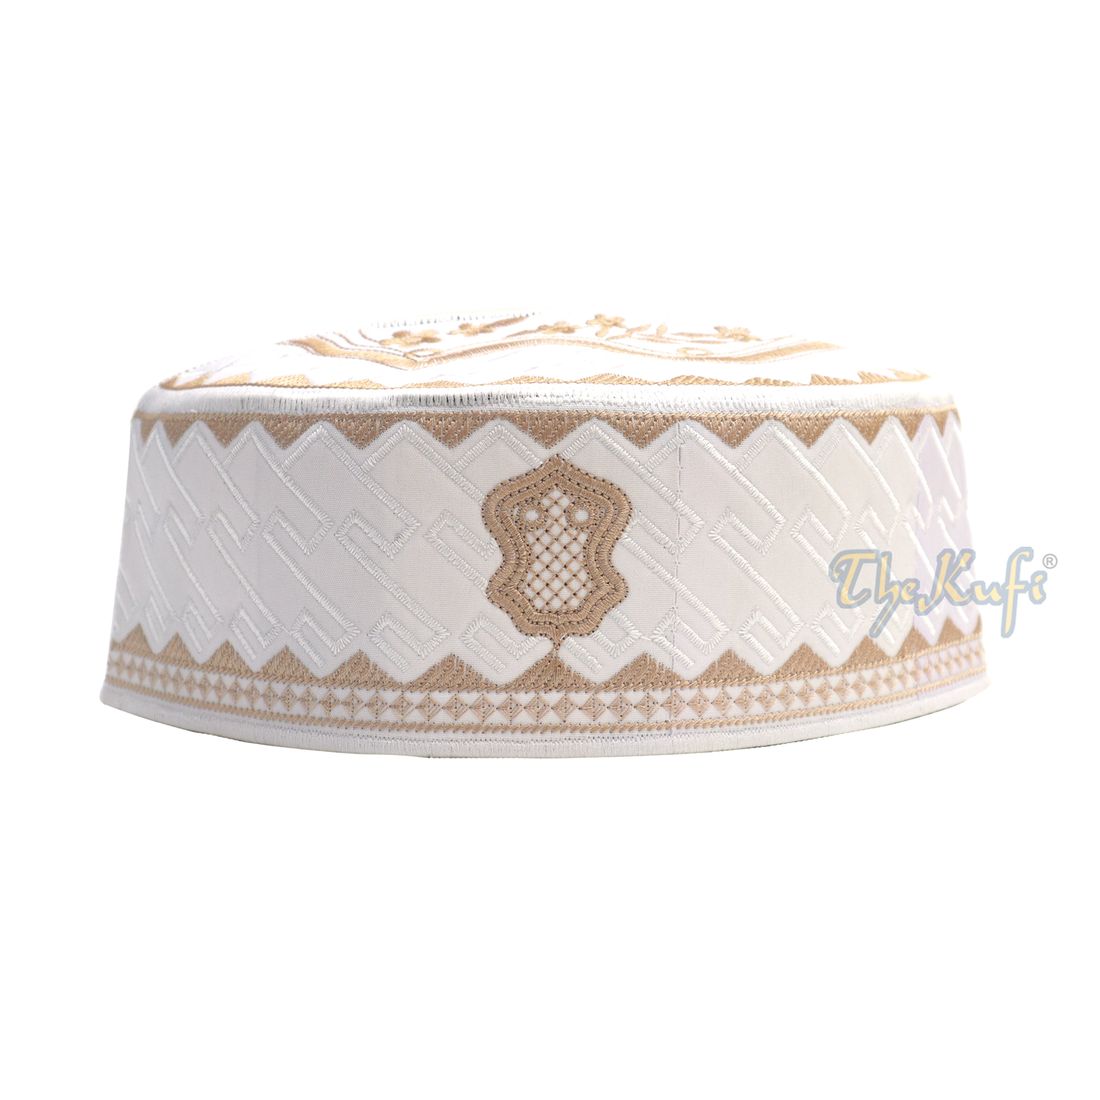 Topi Kufi Sandal Bordir Putih dan Coklat Muda Bertekstur